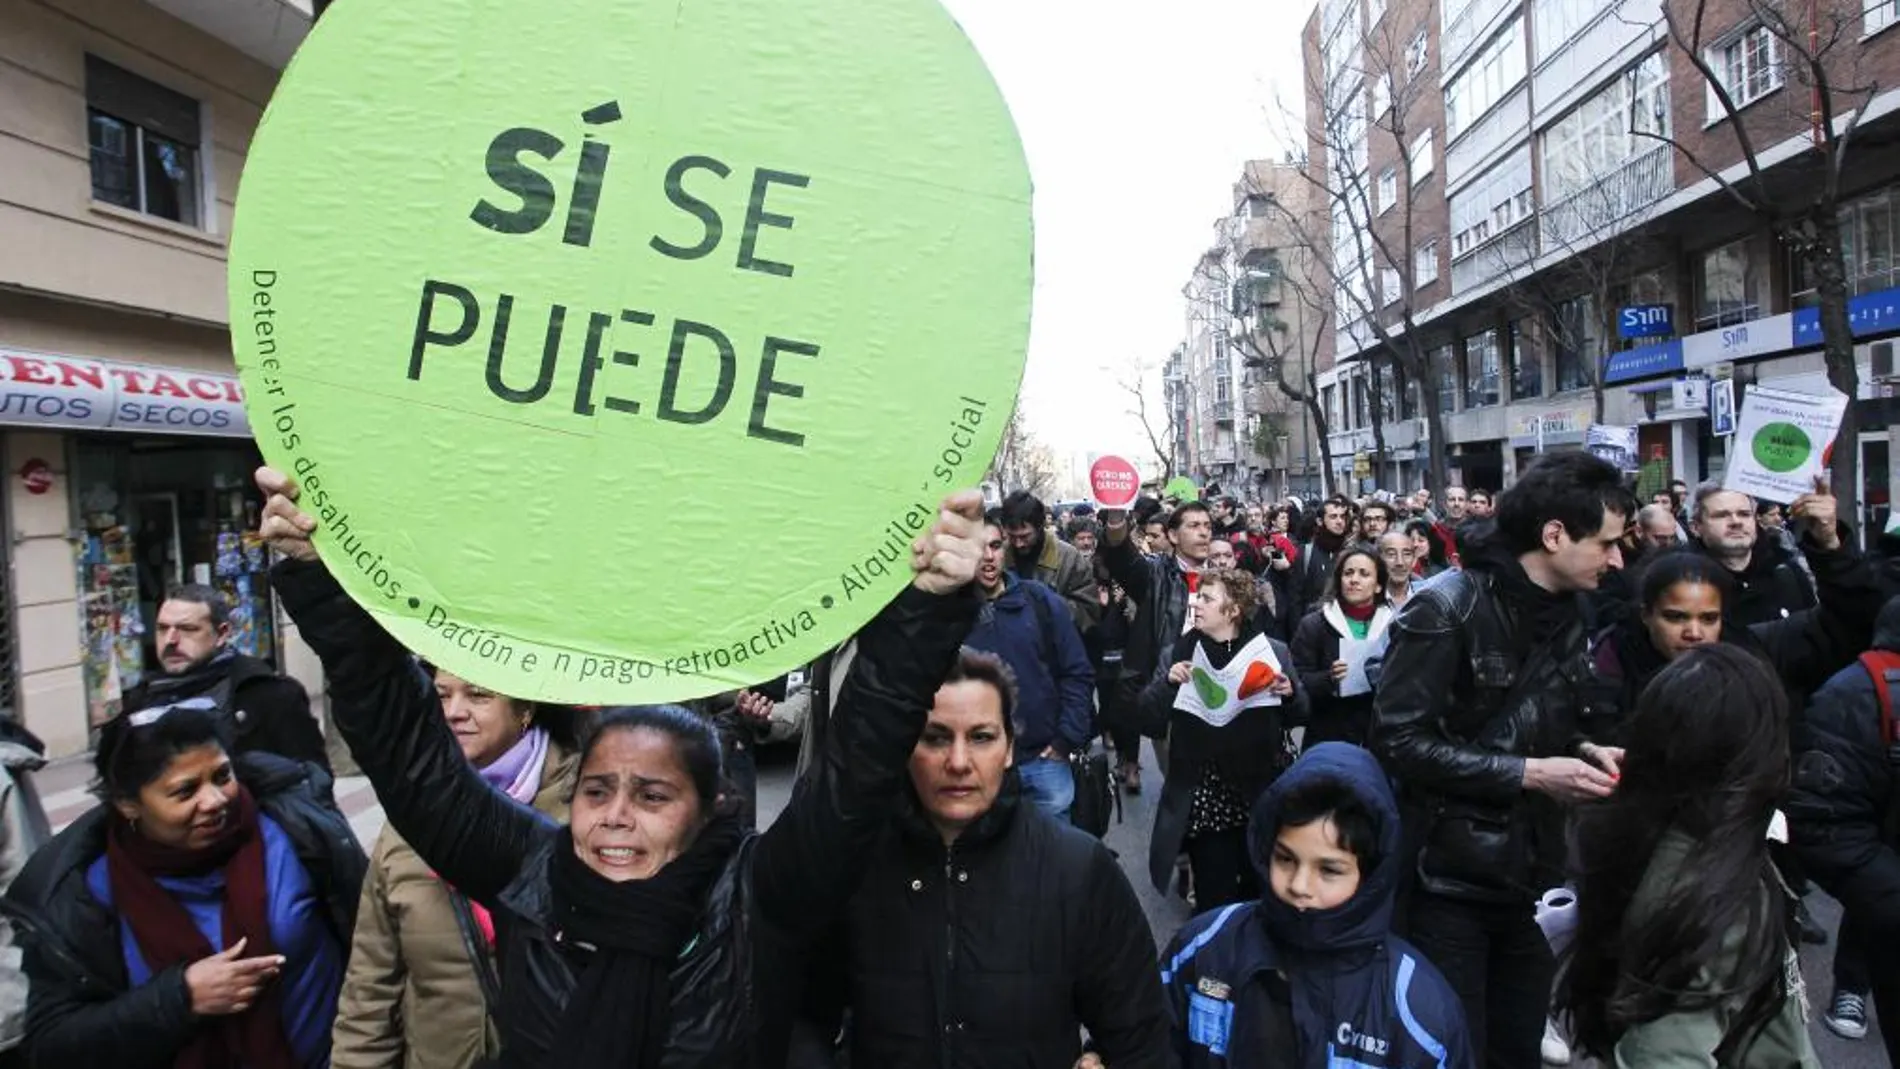 Verstrynge, en la protesta frente al domicilio de Sáenz de Santamaría